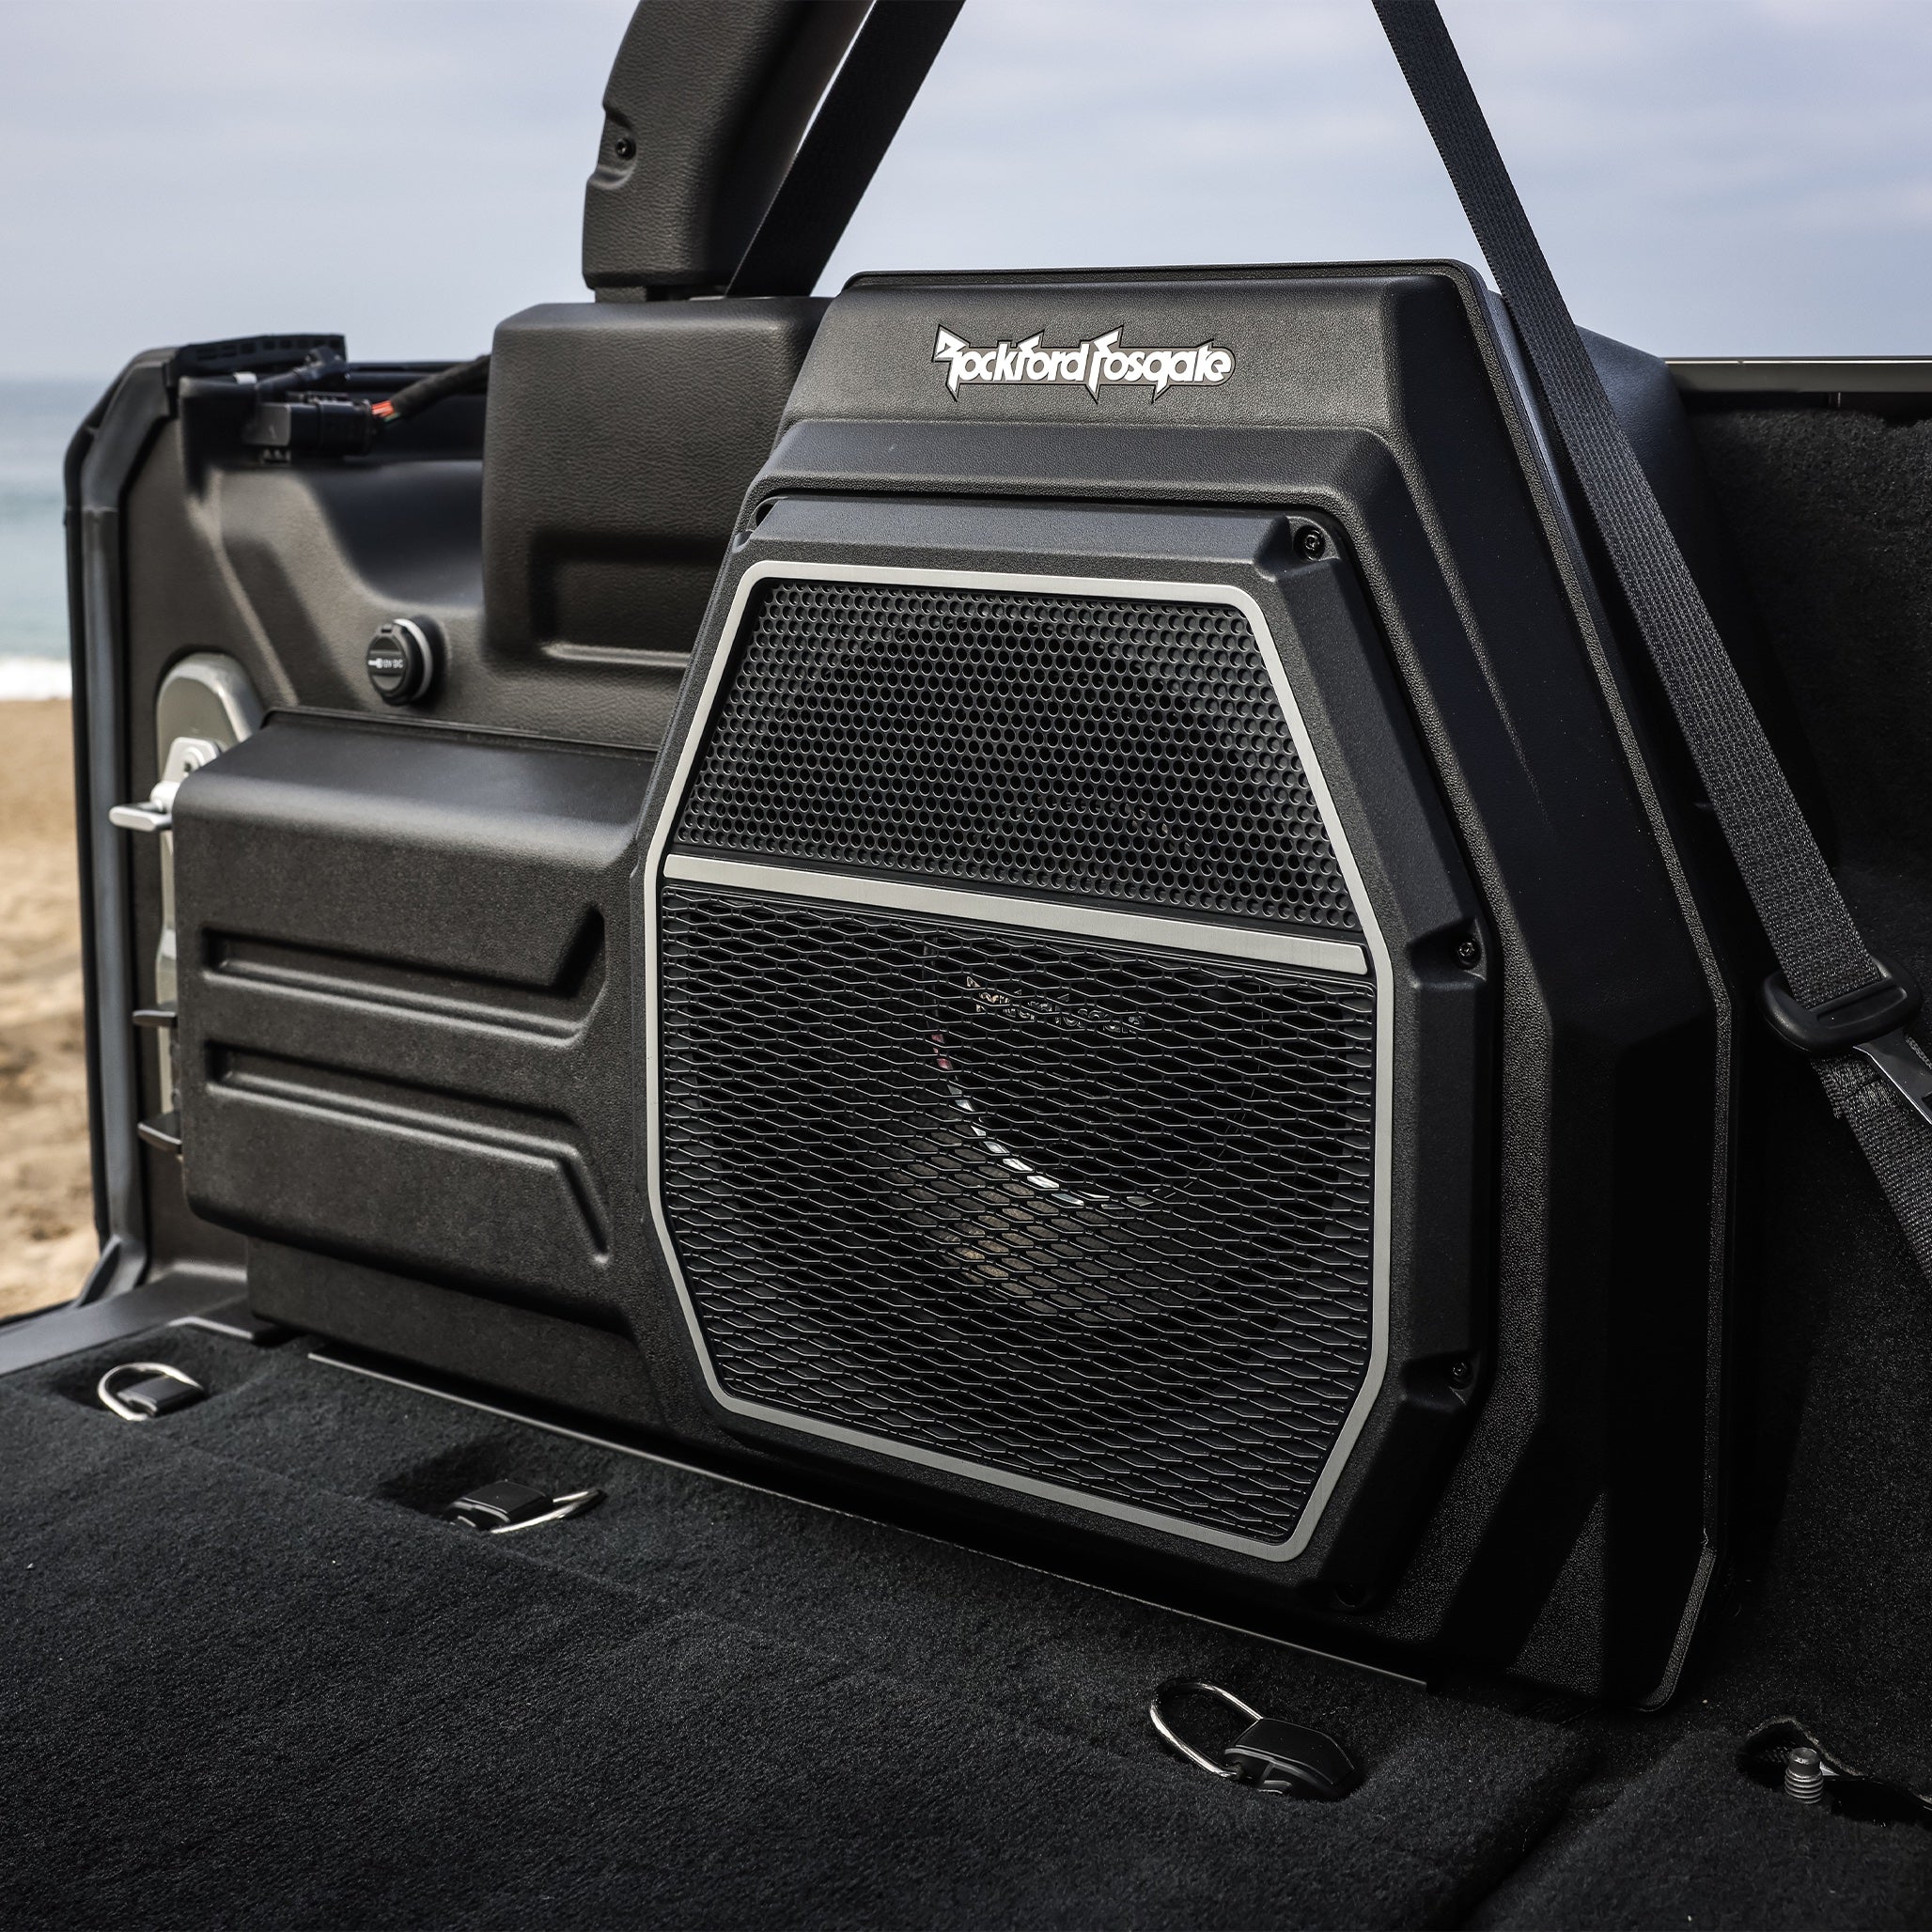 Rockford Fosgate 18WRNGLER-STG5 Wrangler STG5 All-In-One Audio Kit